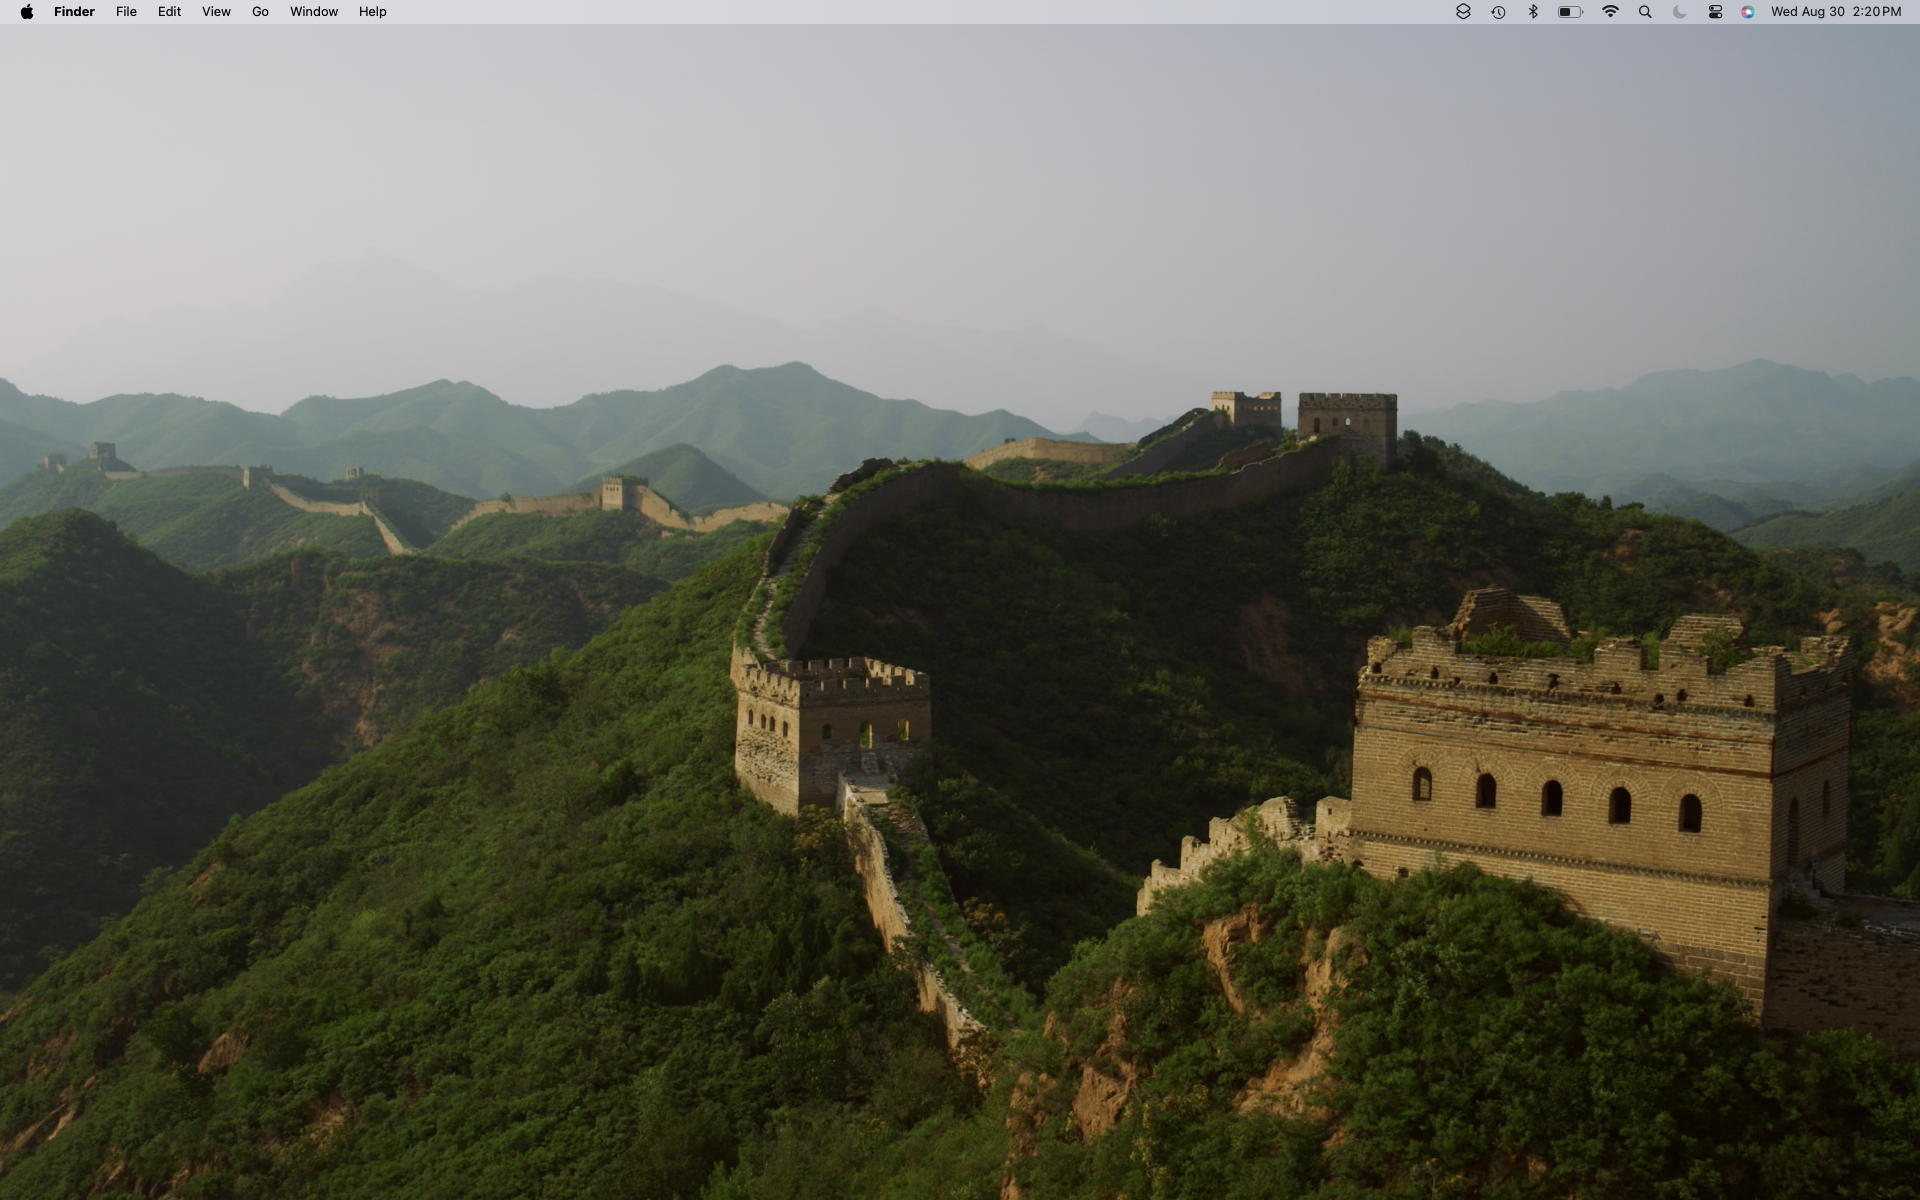 macOS Sonoma wallpaper: China's Great Wall